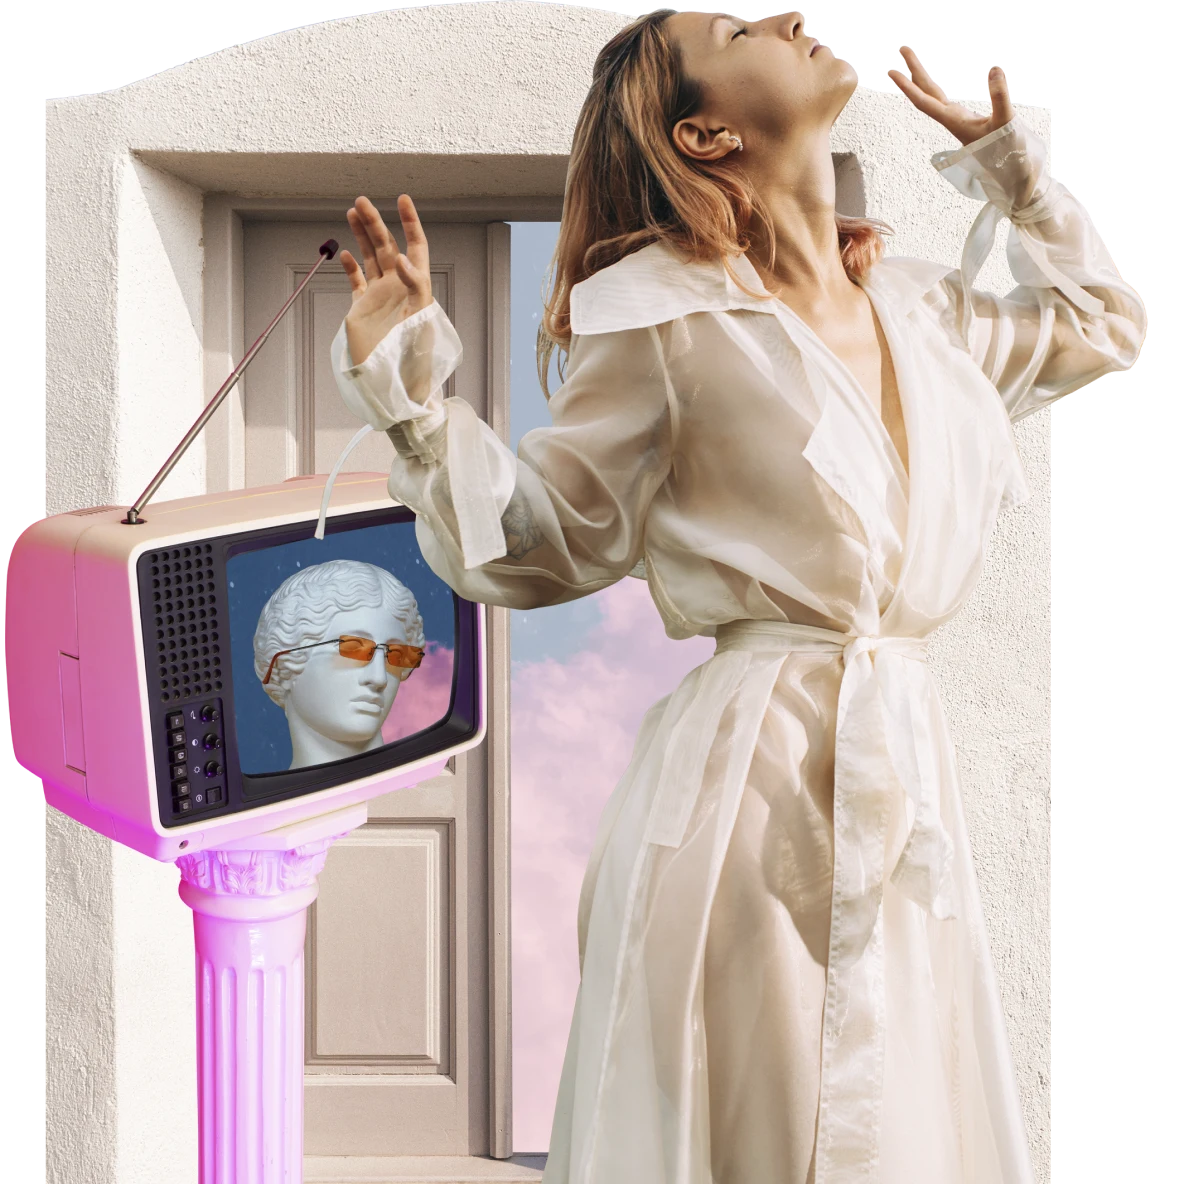 Eine Frau in einem transparenten weißen Regenmantel, die ihren Kopf und ihre Hände nach hinten wirft. Links ein kleiner pinker Fernseher auf einem pinken Sockel mit einer Marmorbüste auf dem Bildschirm. Ein Türbogen im Hintergrund.